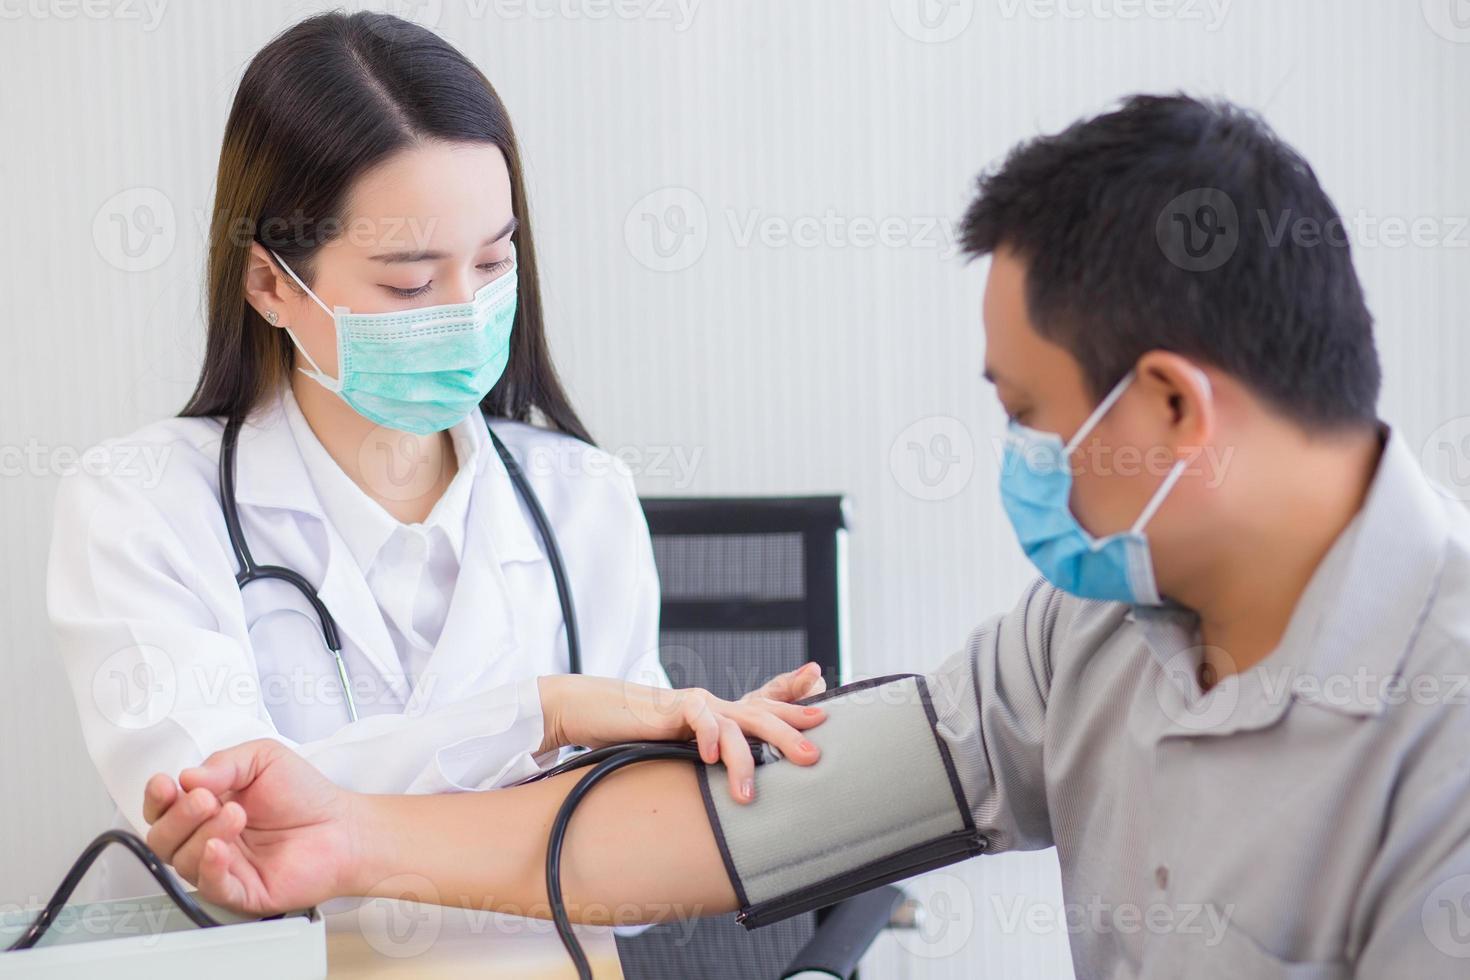 la dottoressa asiatica professionista usa un misuratore di pressione sanguigna con un paziente uomo per controllare la sua salute in ospedale. indossano una maschera medica per proteggere l'infezione del sistema respiratorio. foto